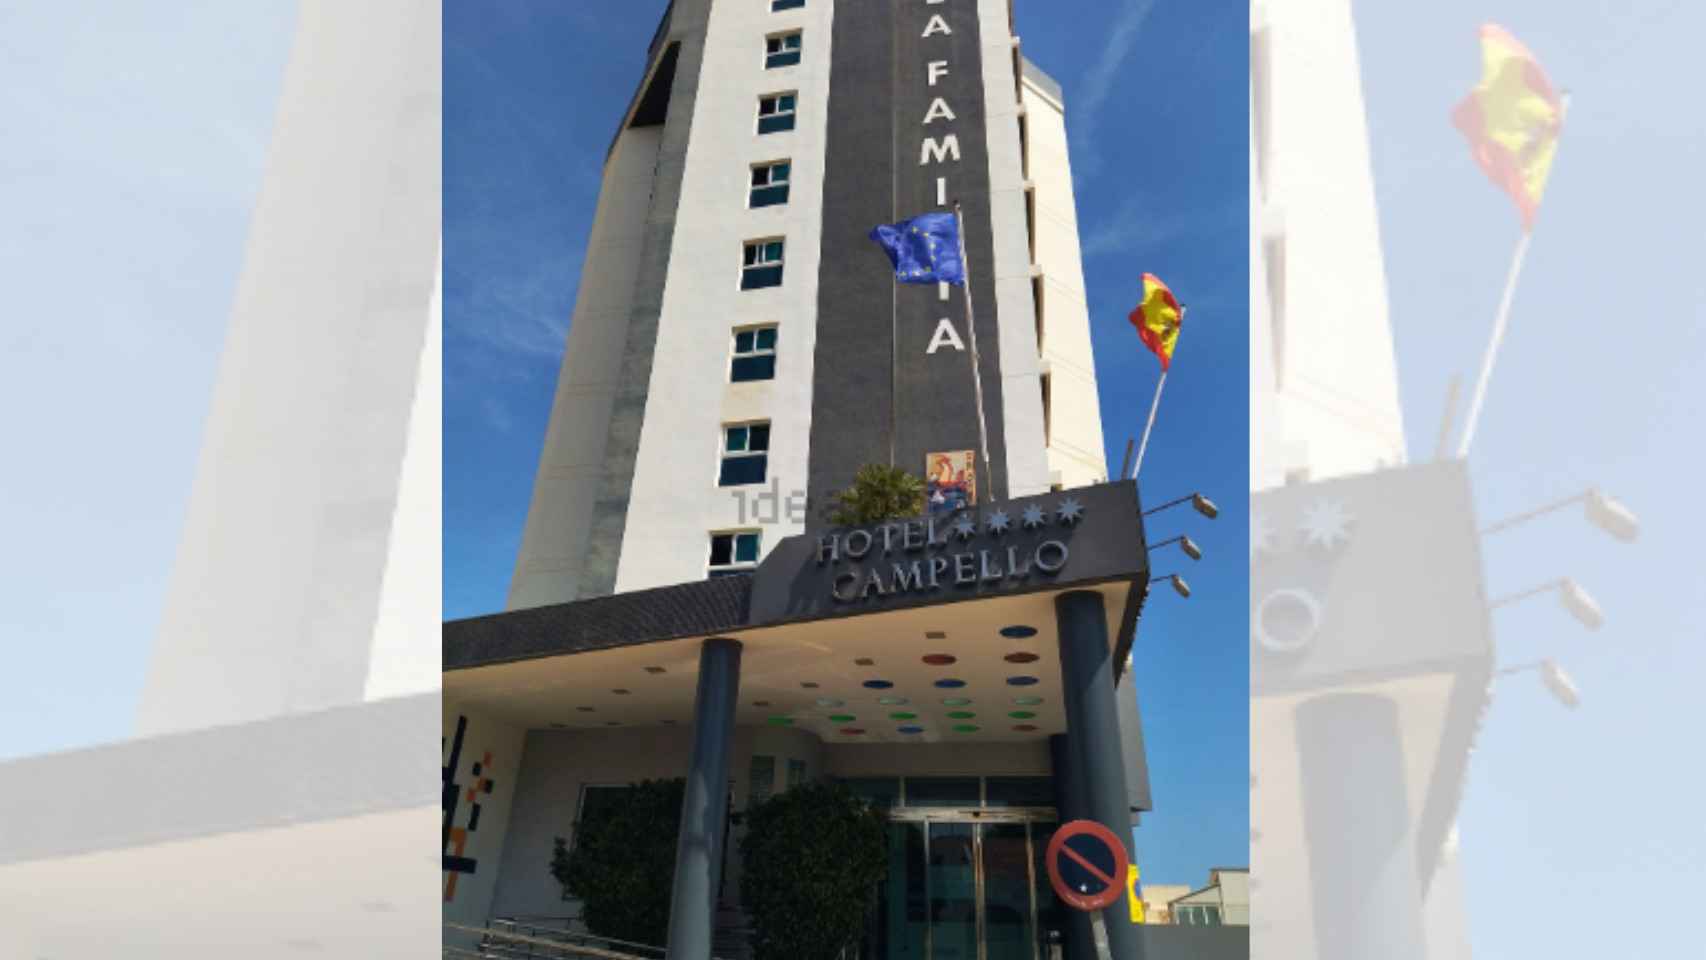 Hotel Campello,  4 estrellas.